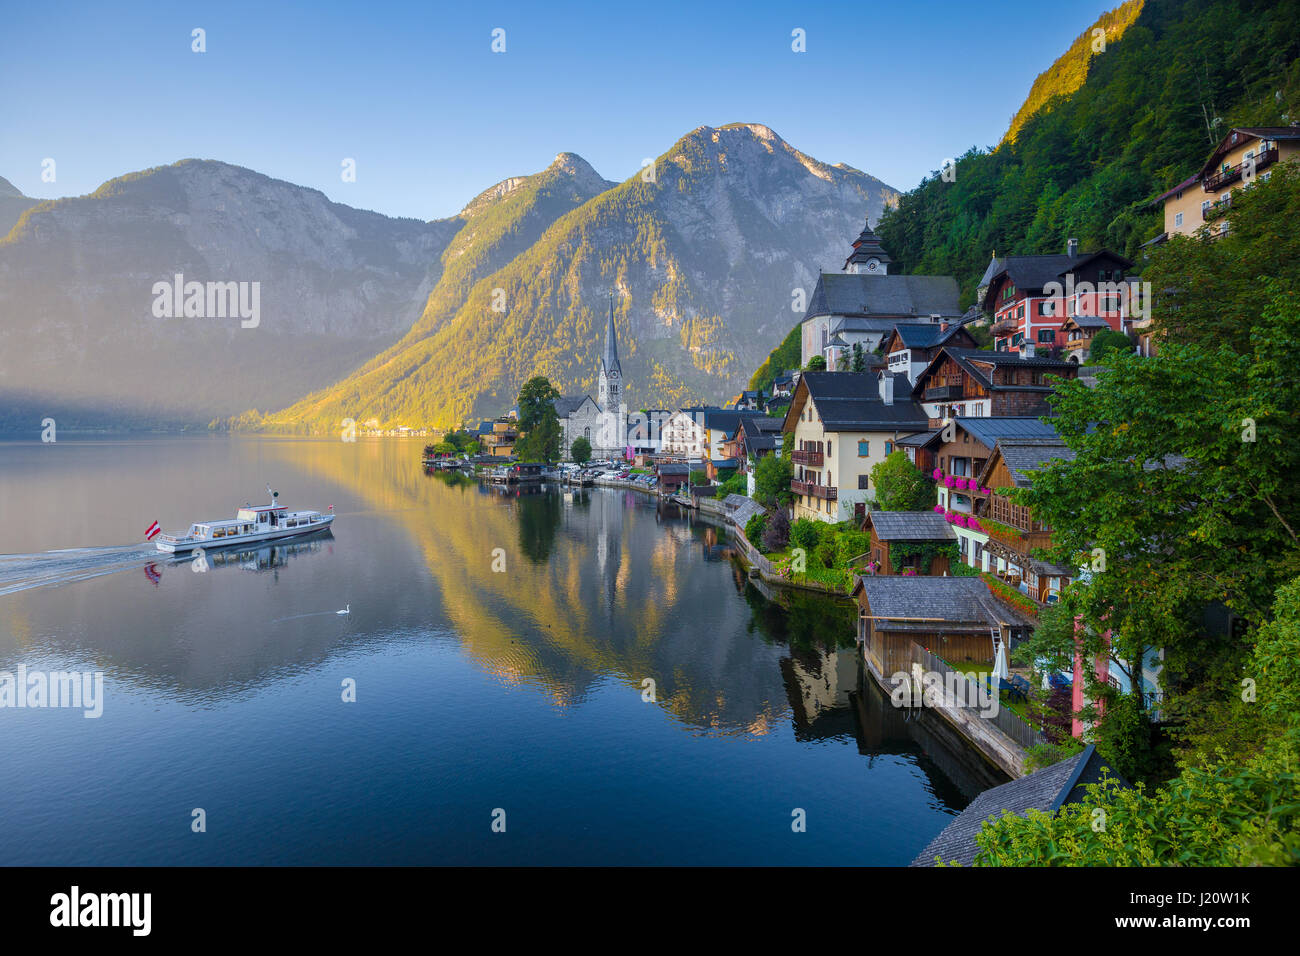 Vue de carte postale classique de la célèbre ville au bord du lac de Hallstatt dans les Alpes avec des passagers à bord d'un navire traditionnel au début de lumière du matin à l'aube, Autriche Banque D'Images